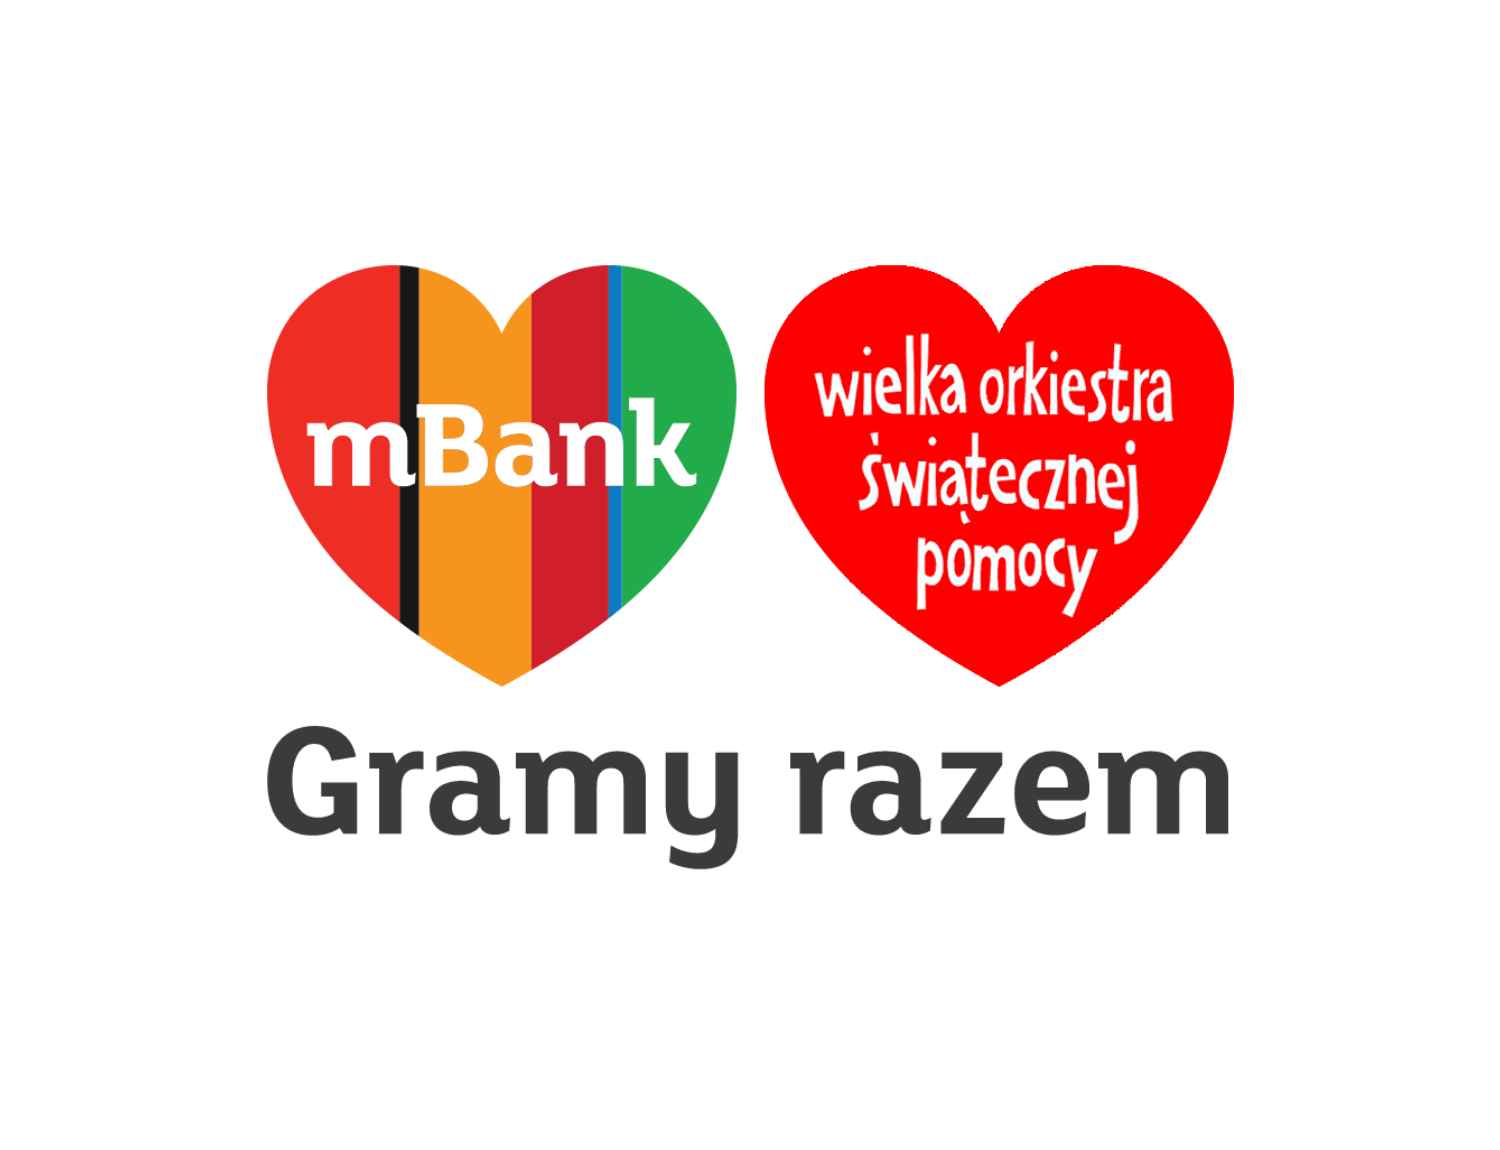 mbank_logo_wosp.png